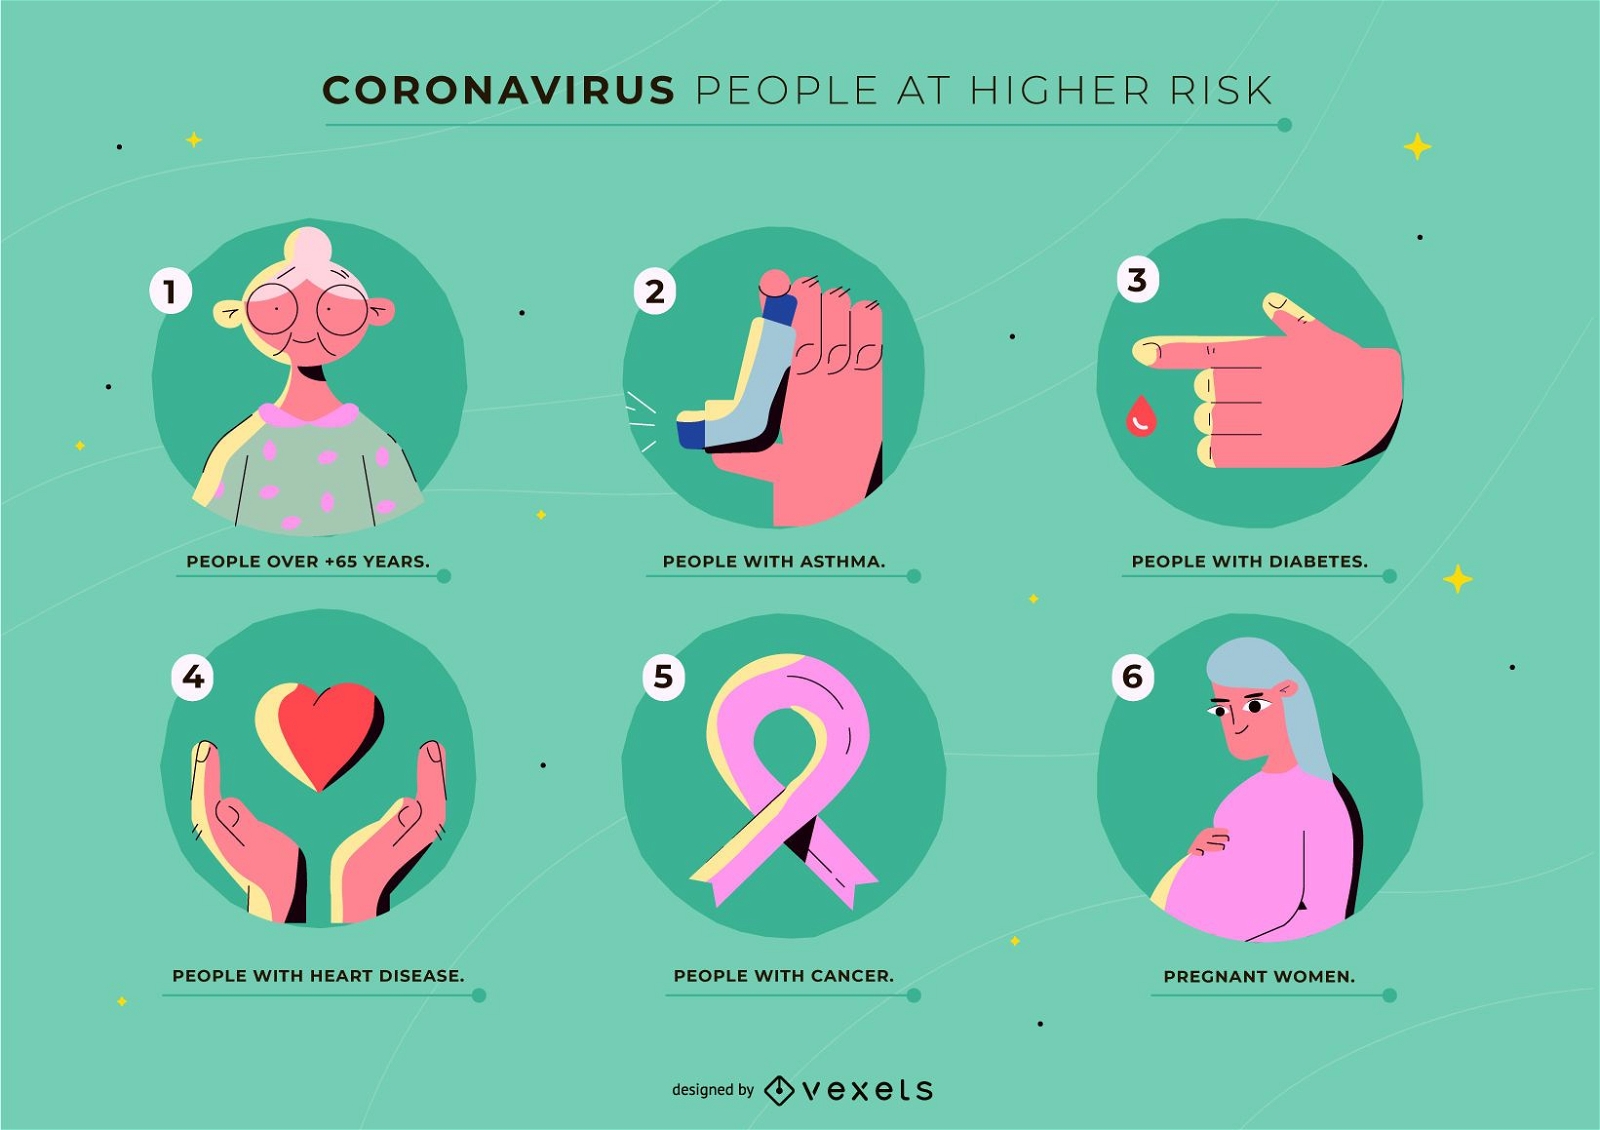 Modelo de coronavírus de pessoas de alto risco